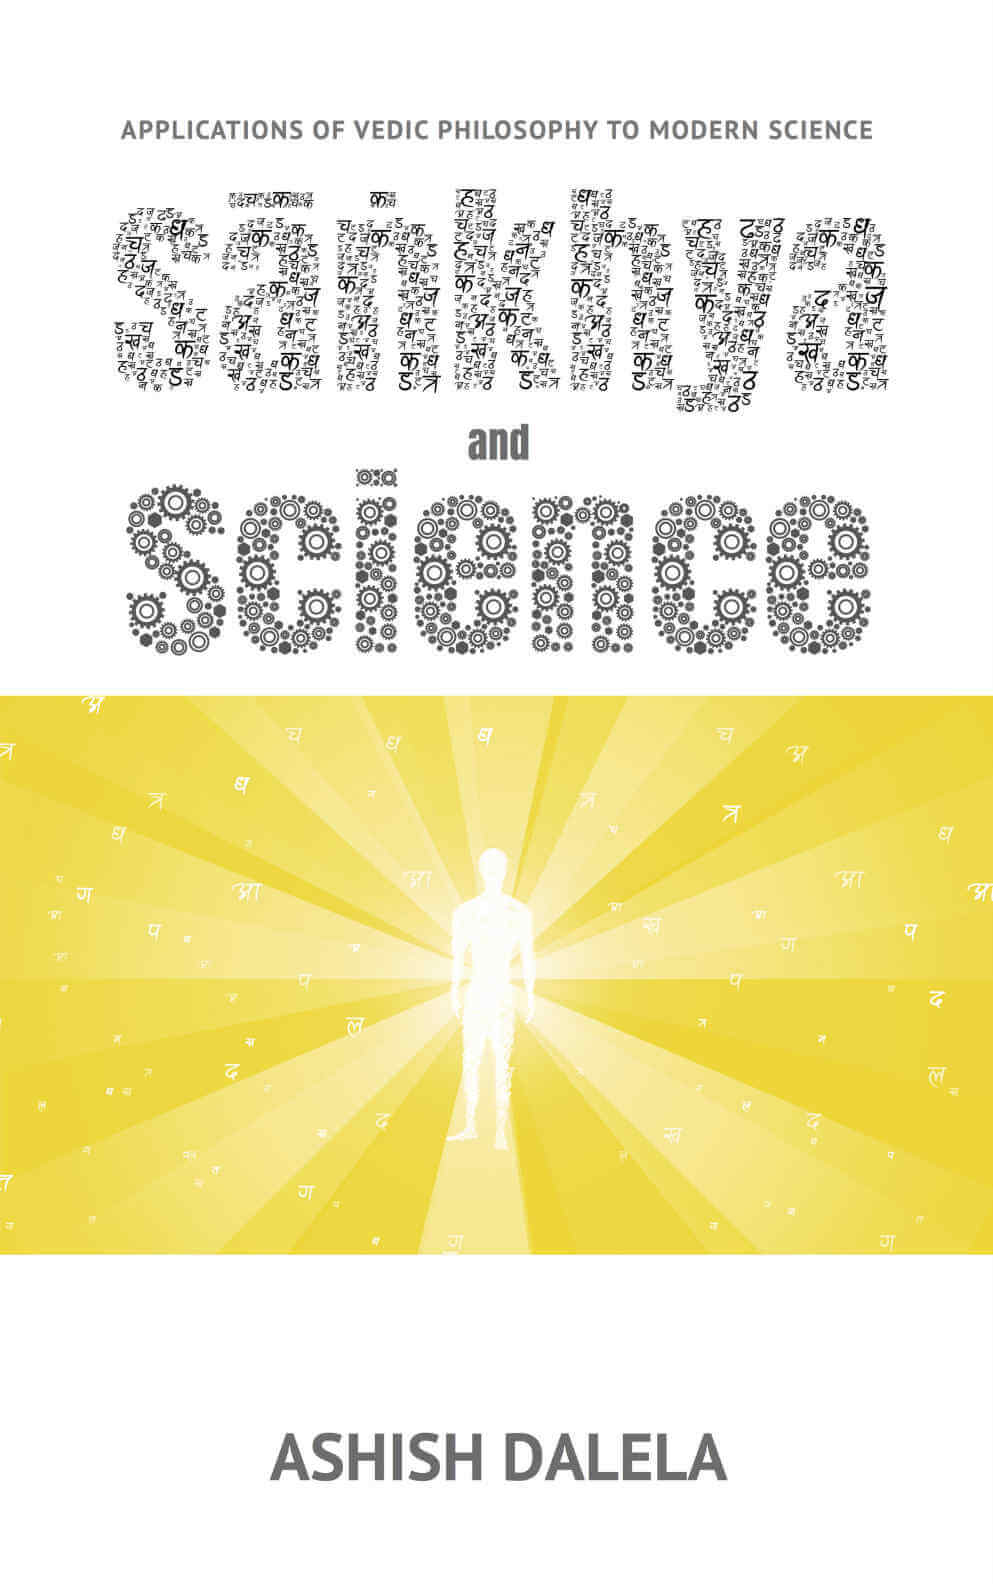 Sankhya and Science: تطبيقات الفلسفة الفيدية على العلوم الحديثة